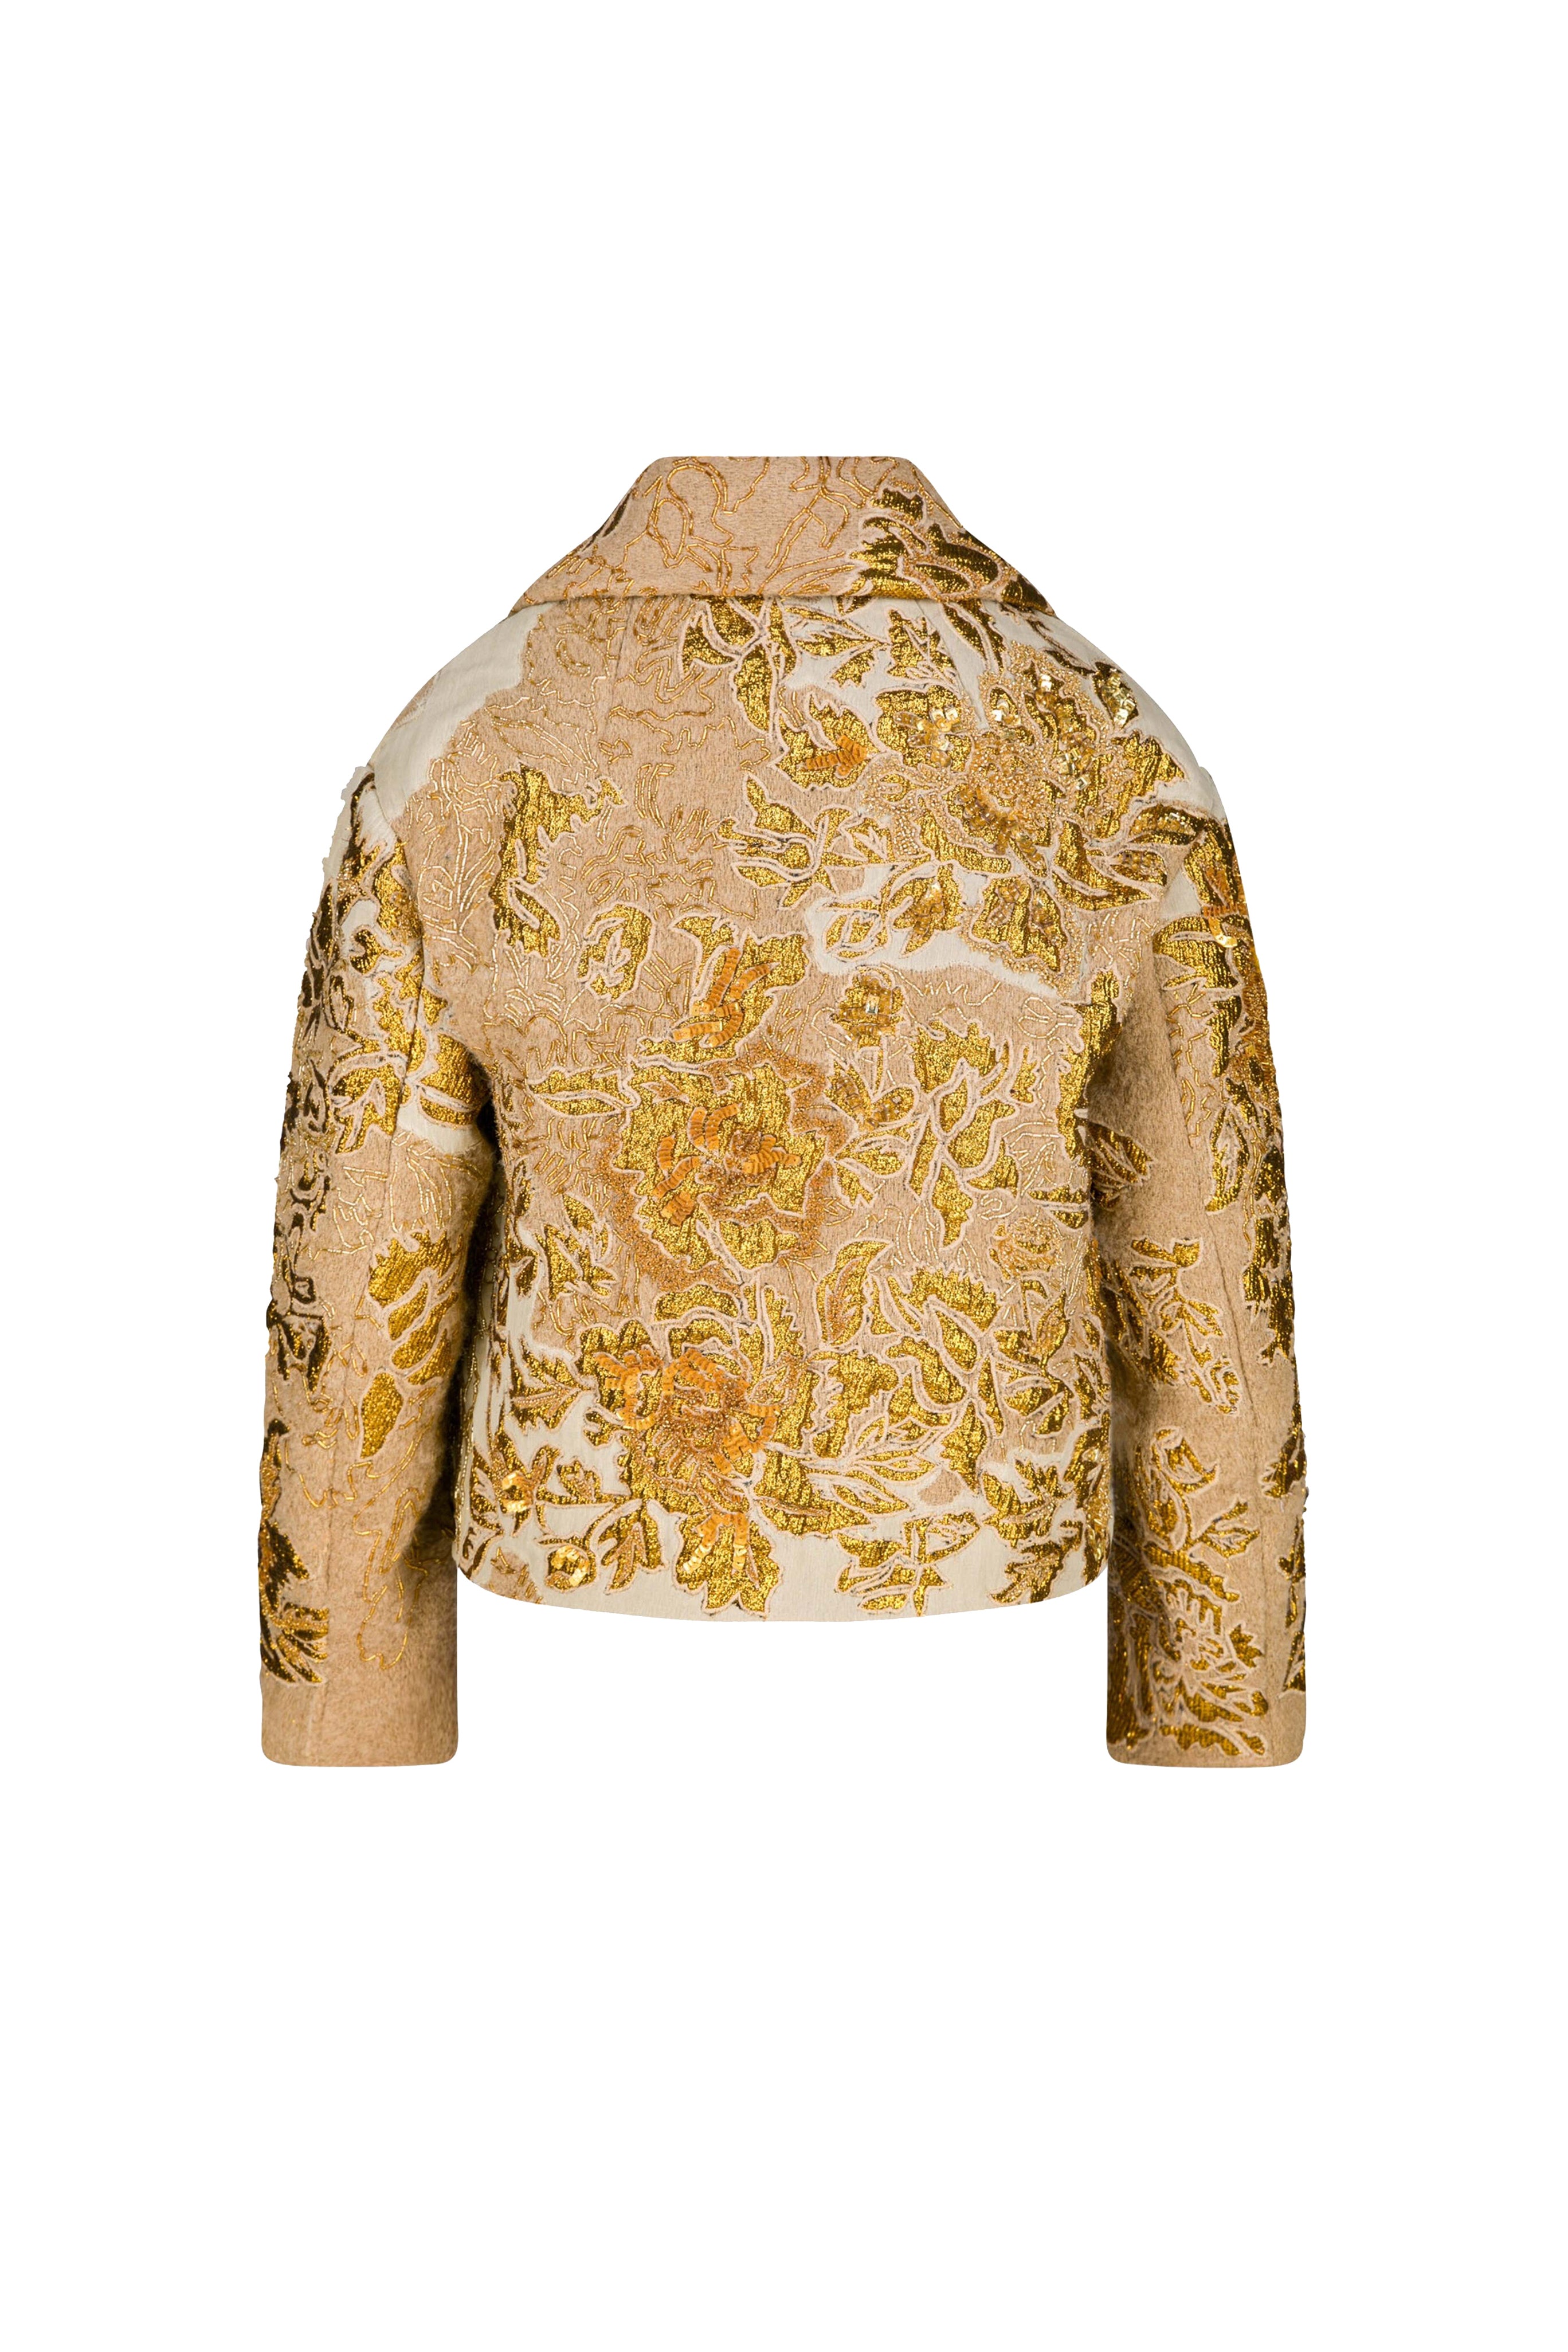 Dries Van Noten Embroidered Coat